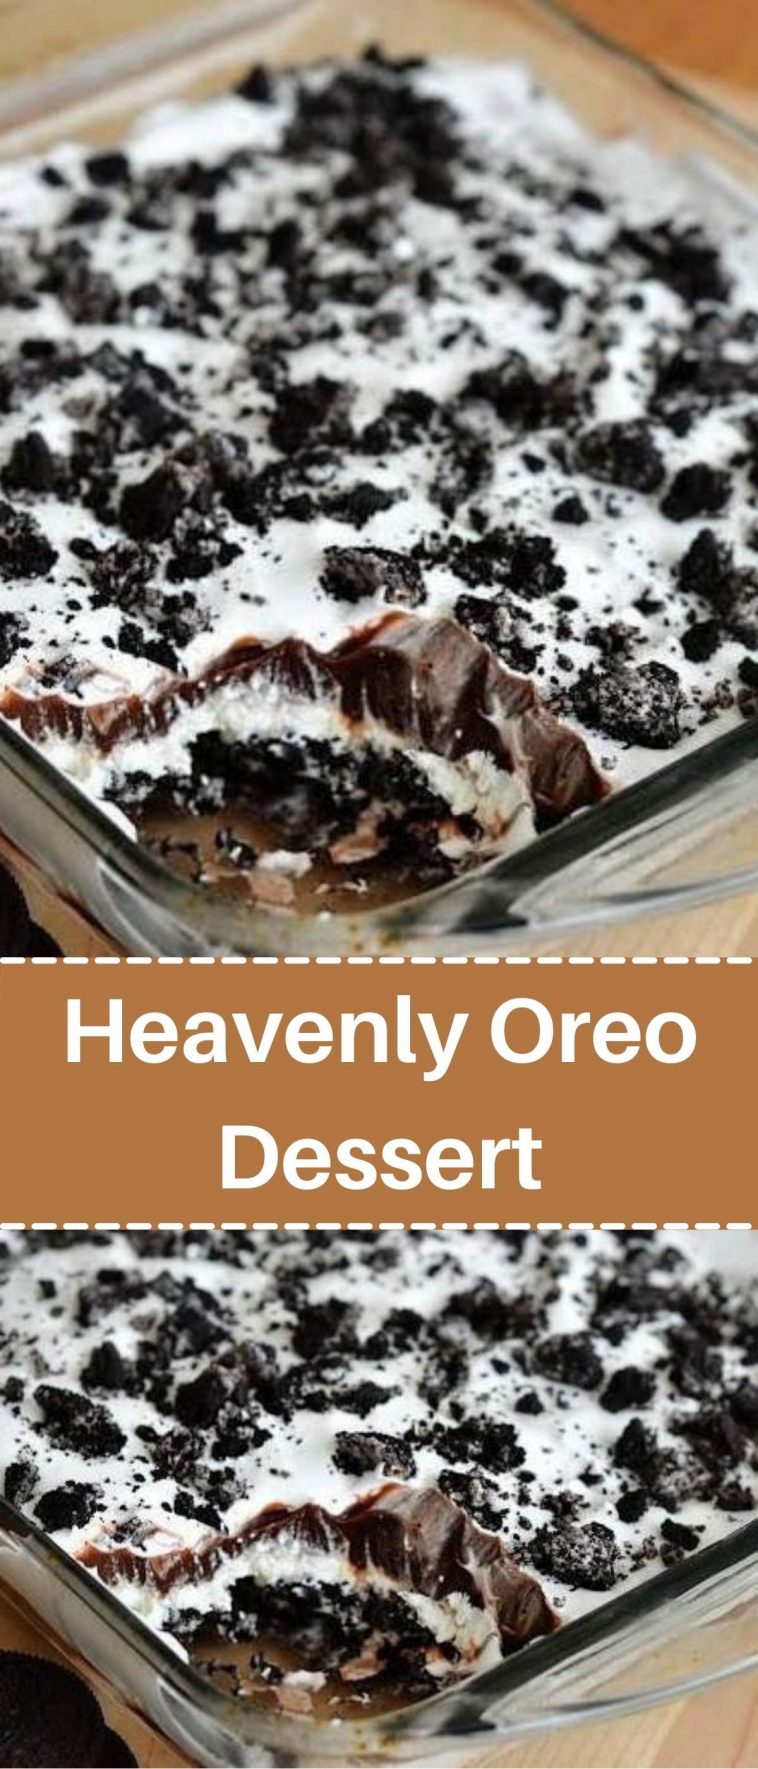 Heavenly Oreo Dessert